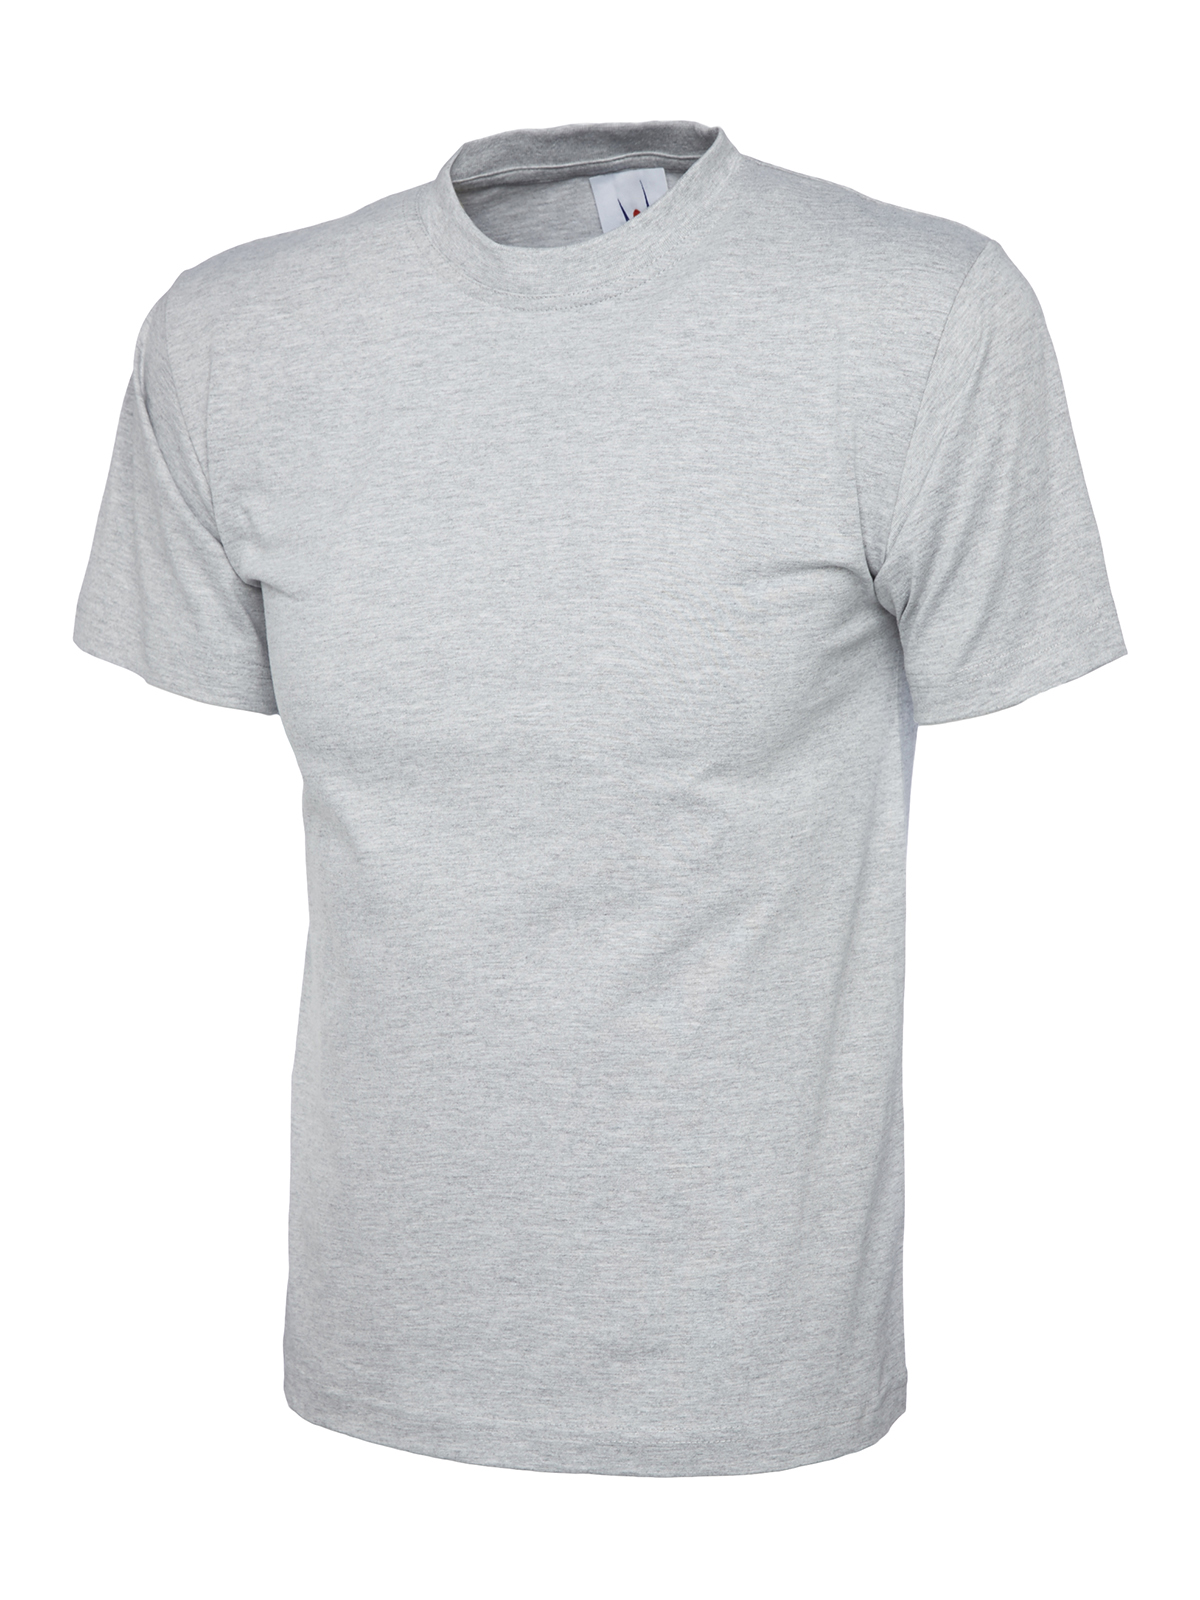 Uneek Herren T-Shirt Premium, Grau